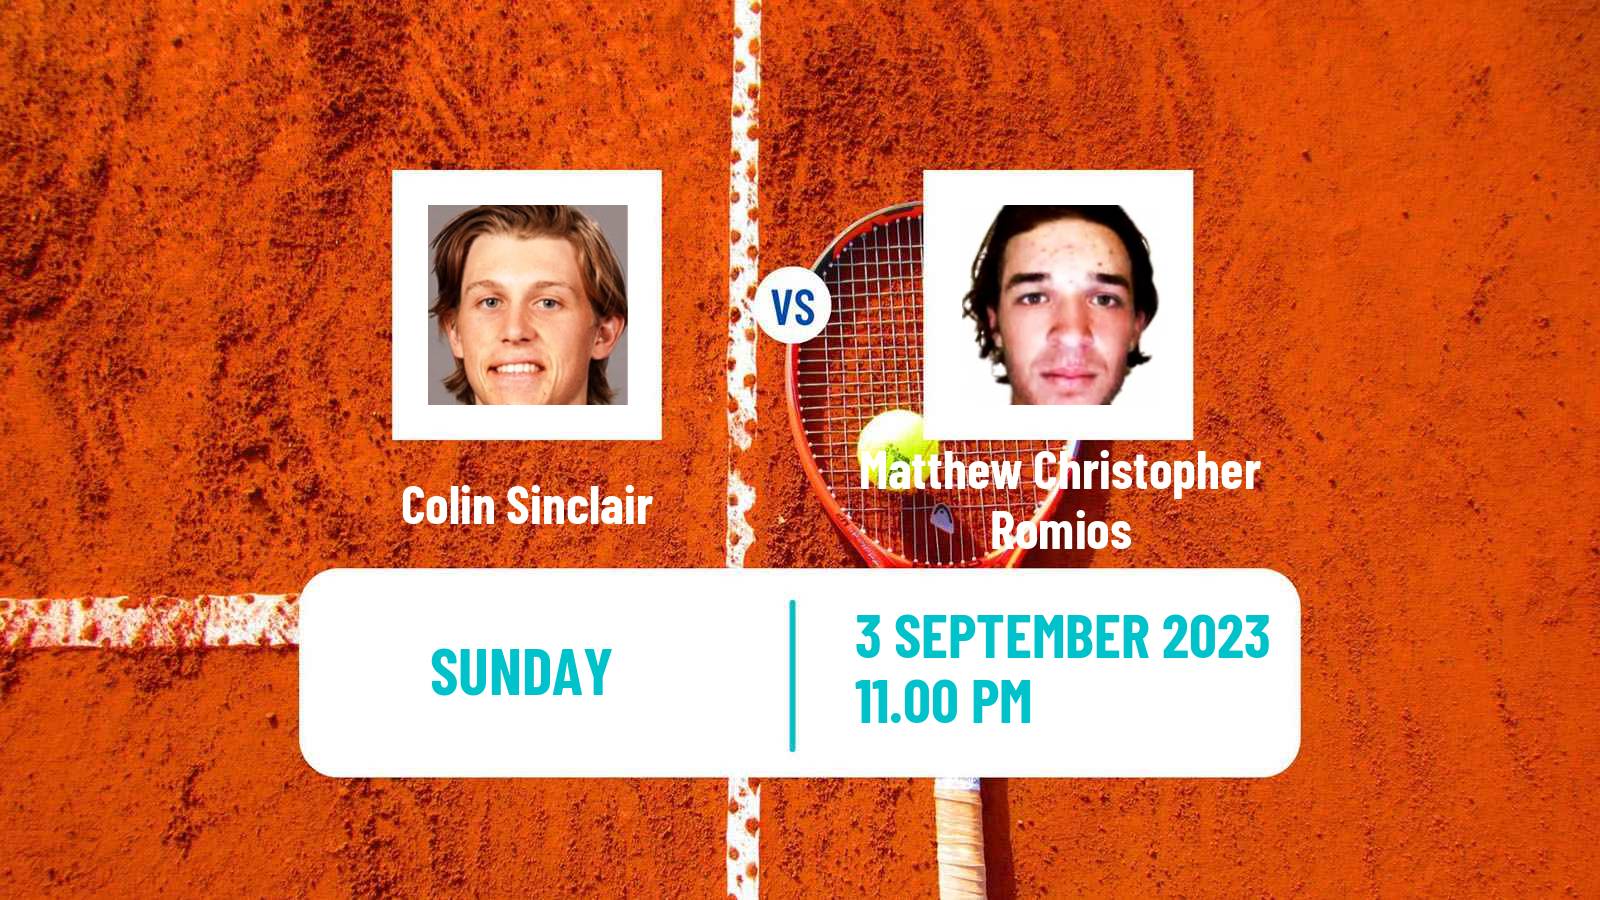 Tennis Shanghai Challenger Men 2023 Colin Sinclair - Matthew Christopher Romios